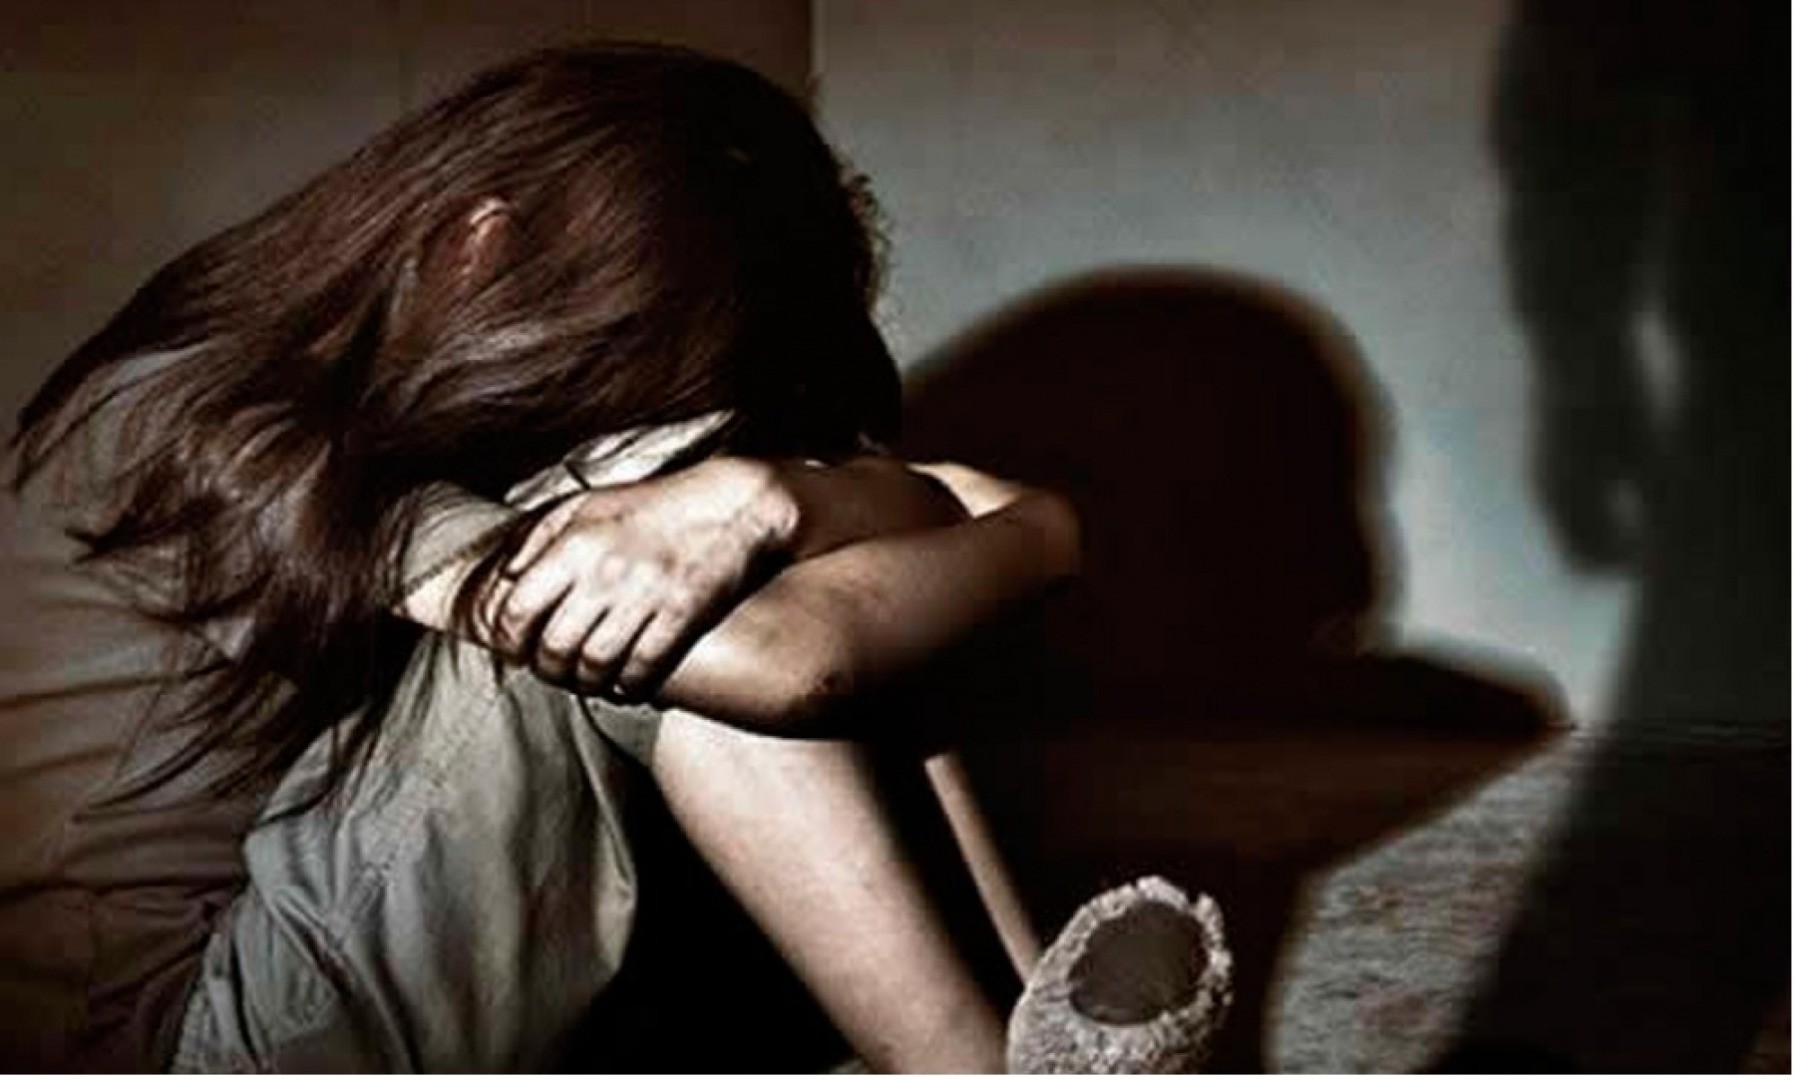 “Me ajuda estou sofrendo abuso sexual”: Em bilhete, menina denuncia padrasto em Chapecó